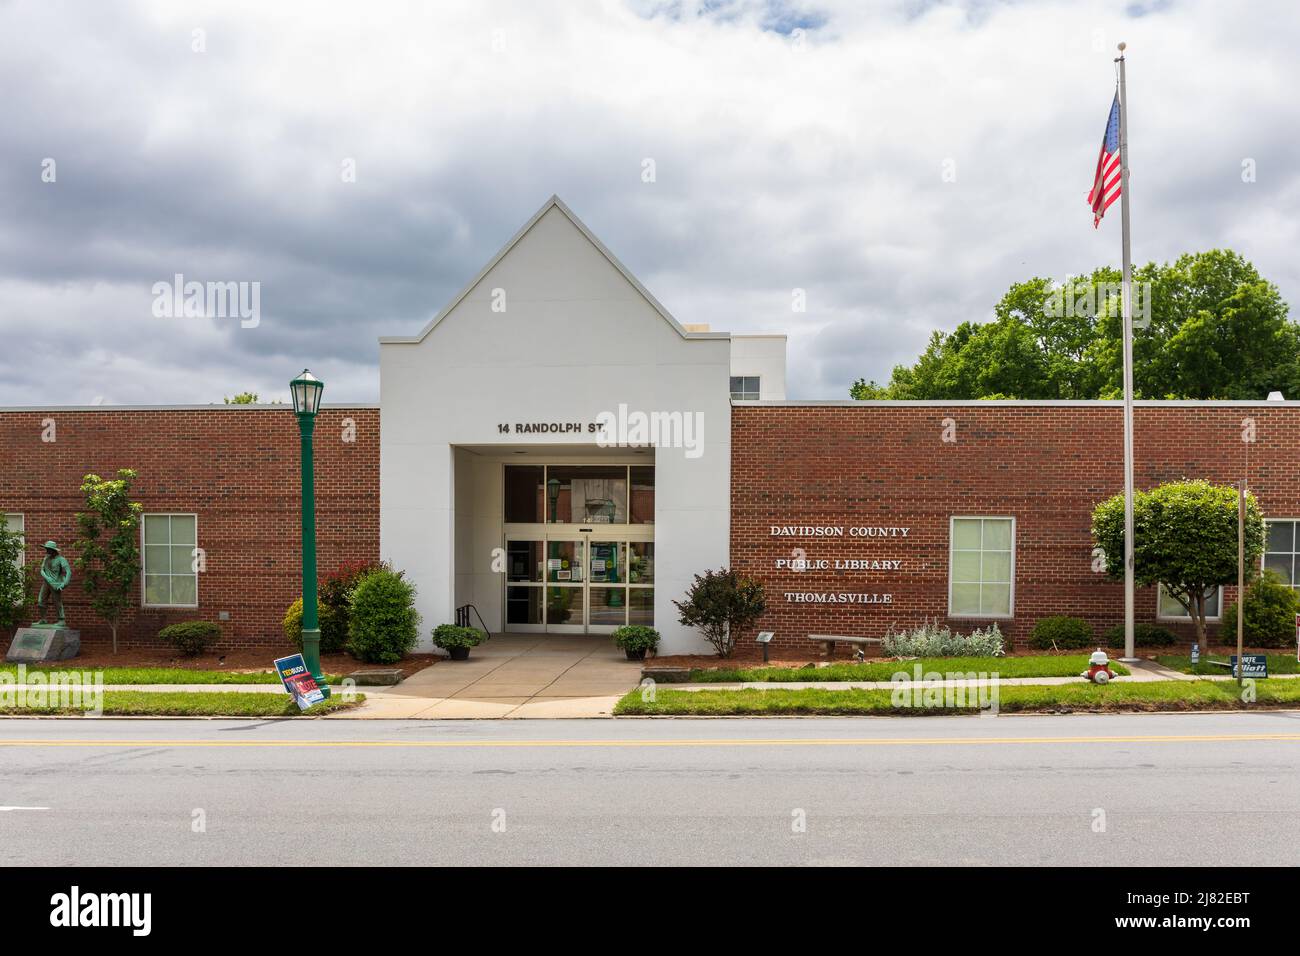 THOMASVILLE, NC, USA-8 MAYO 2022: Biblioteca Pública del Condado Davidson. Entrada principal y señal. Foto de stock